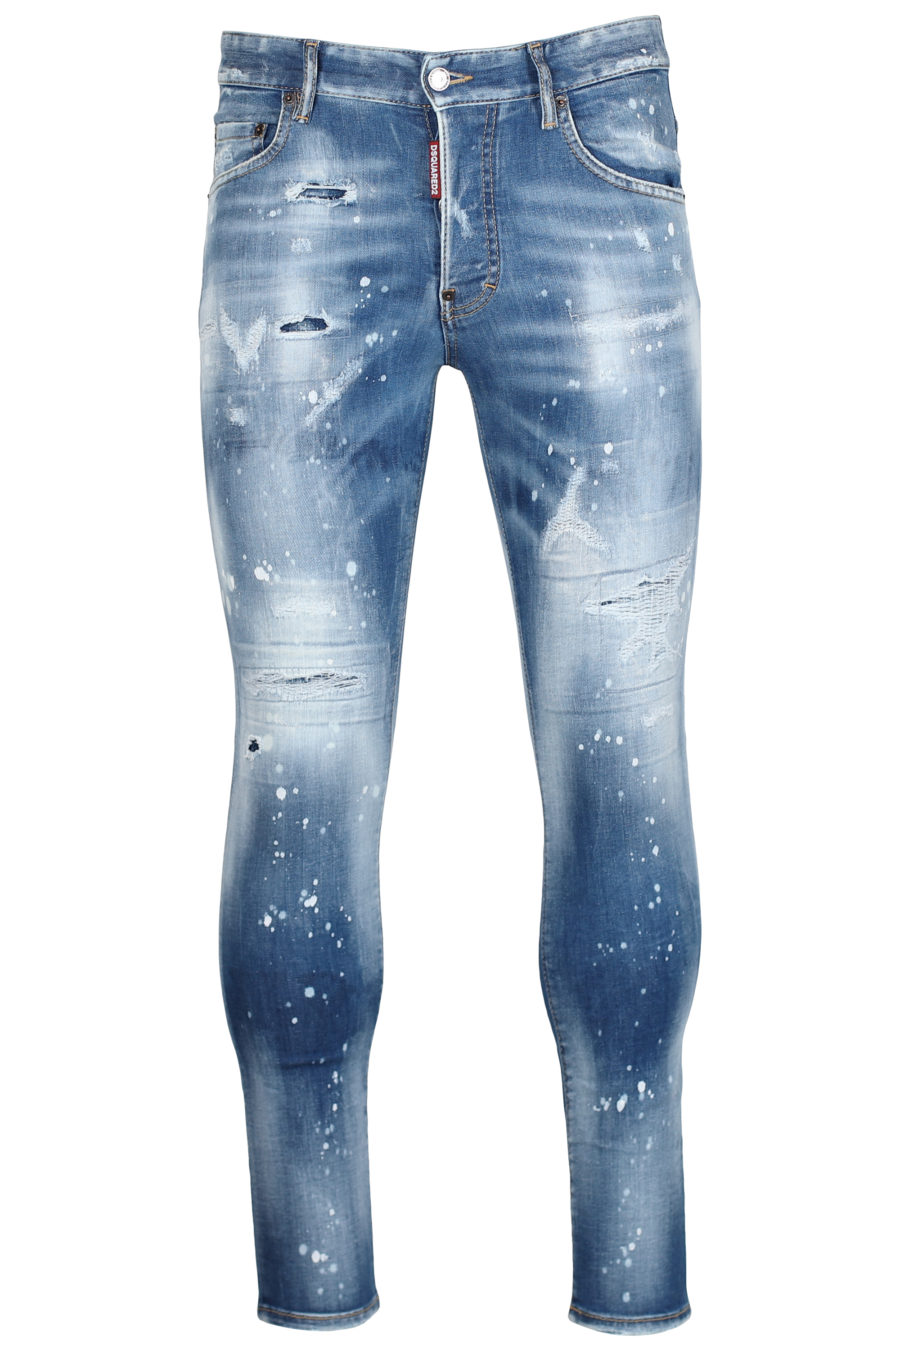 Tejano azul "Skater jean" - IMG 2438 1